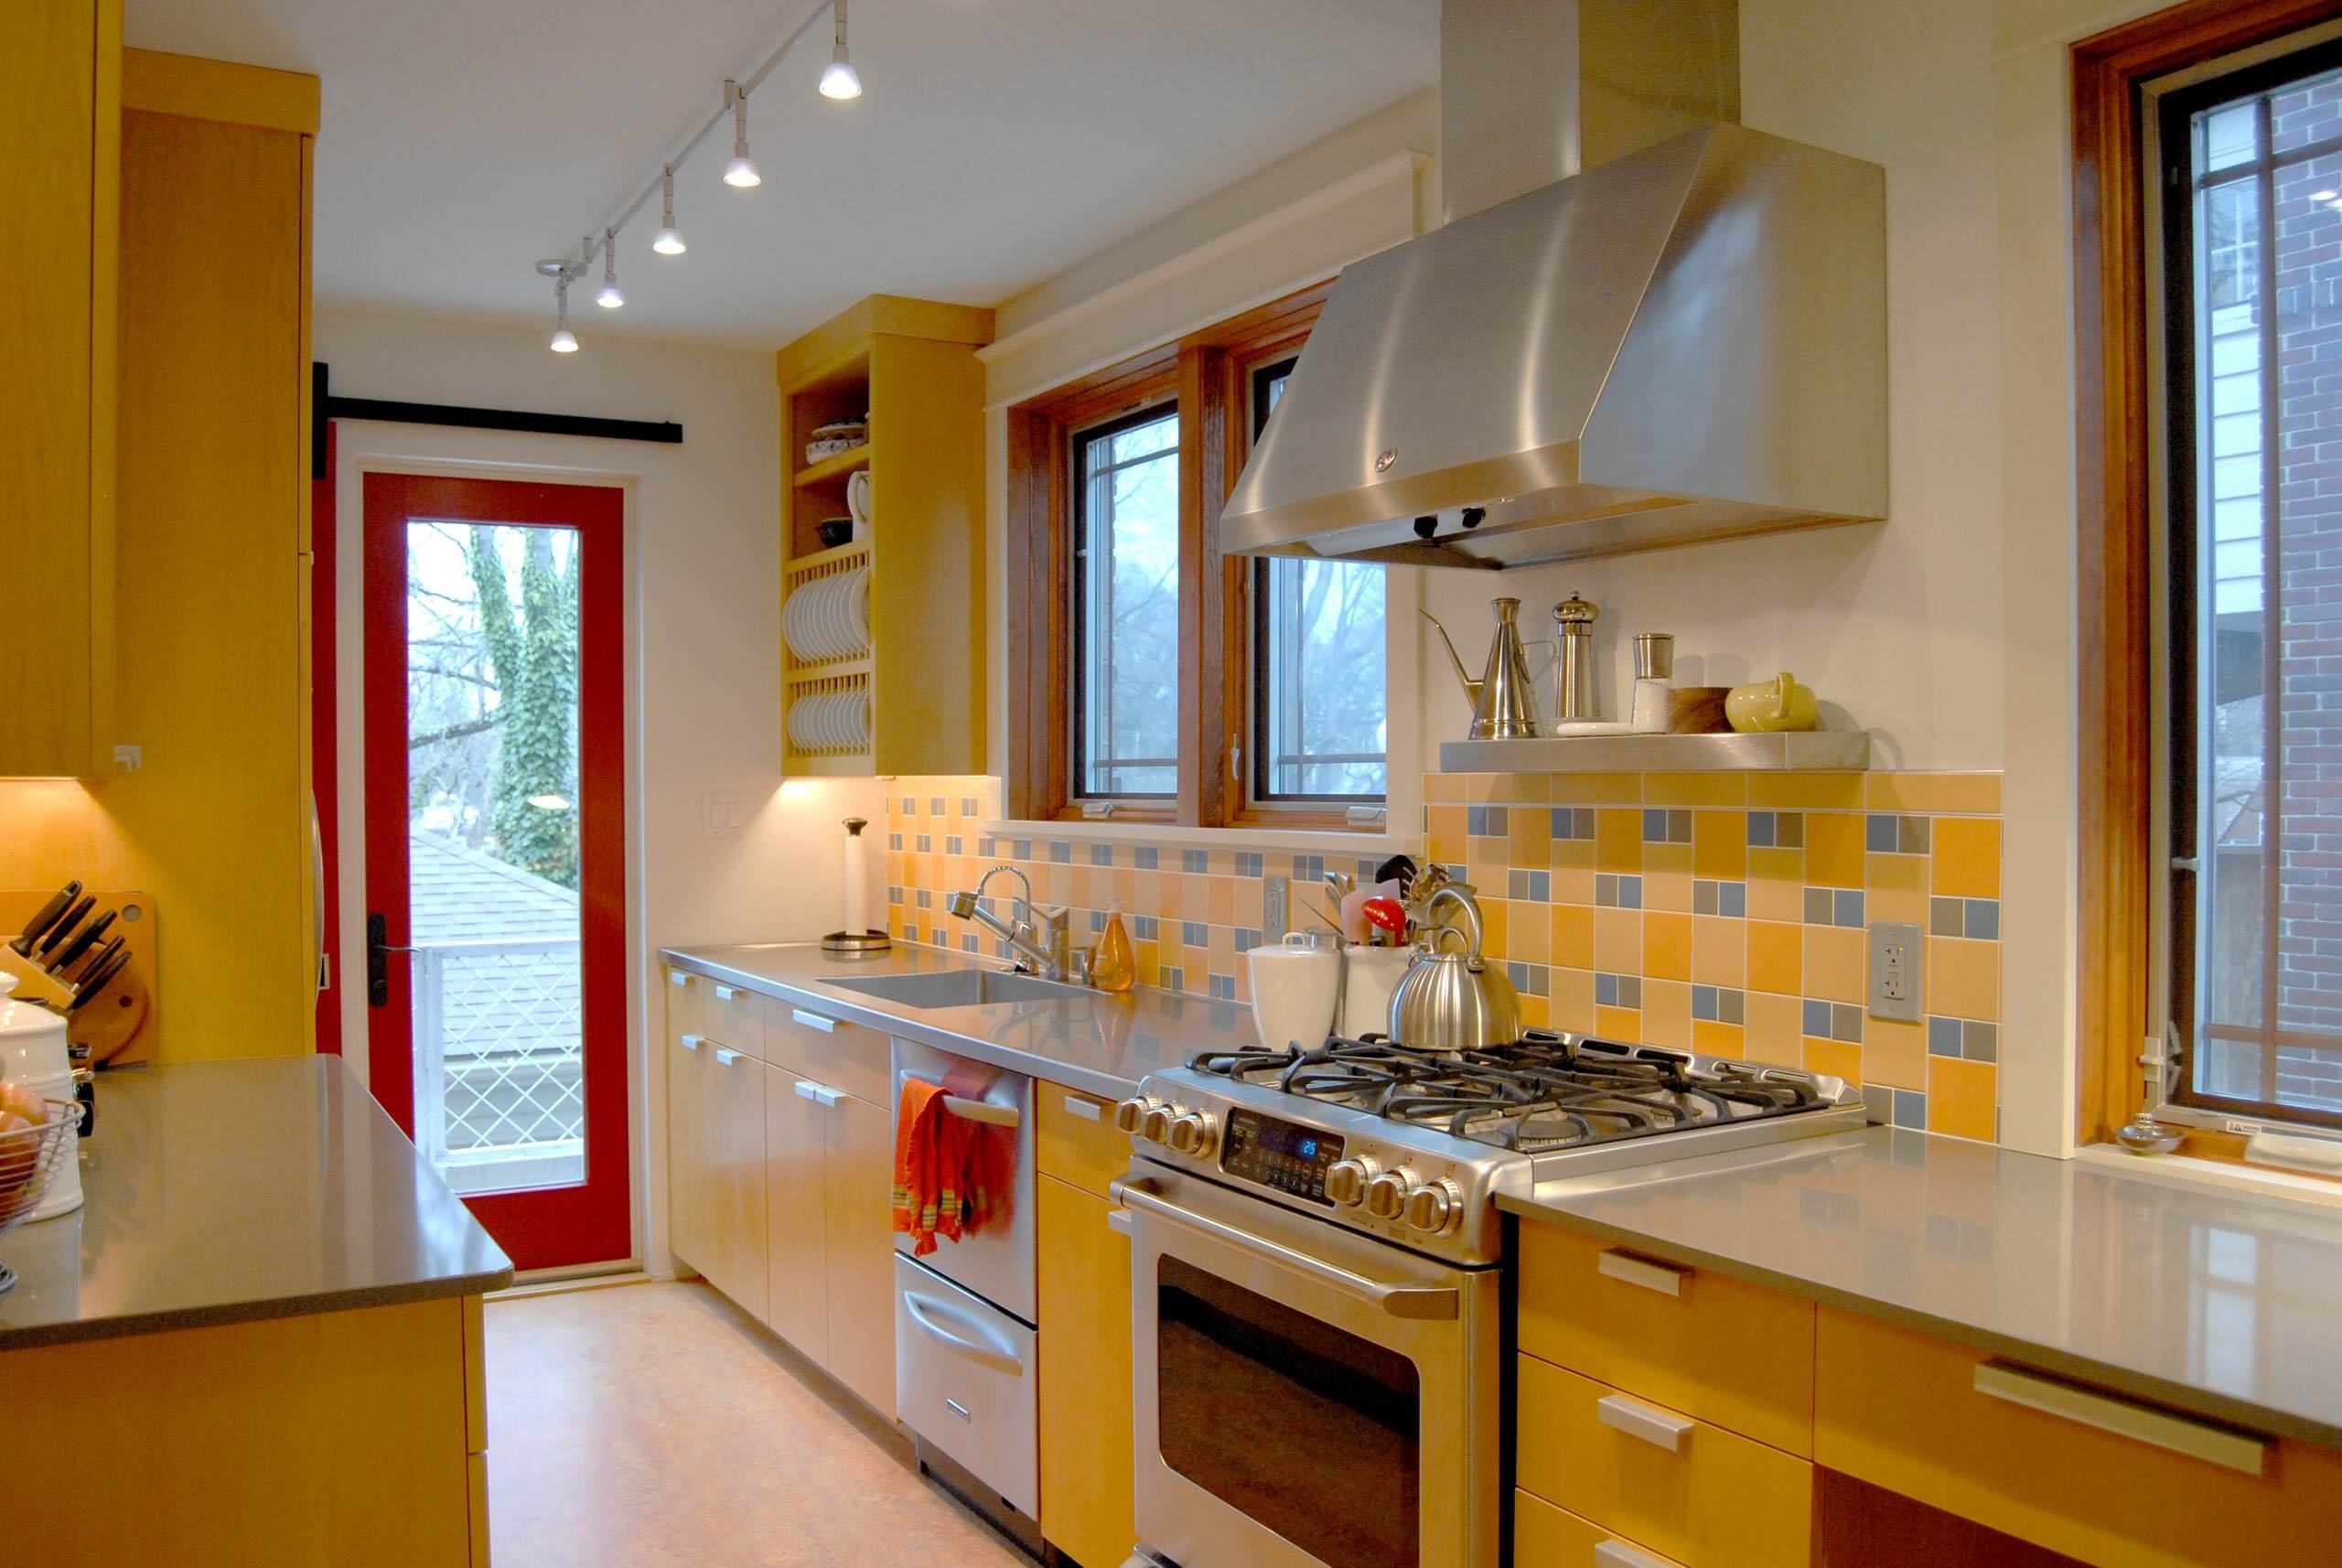 Интерьер ремонта кухонь. Желтая кухня в интерьере. Кухня в желтом цвете. Кухни цветовые решения. Желтые стены на кухне.